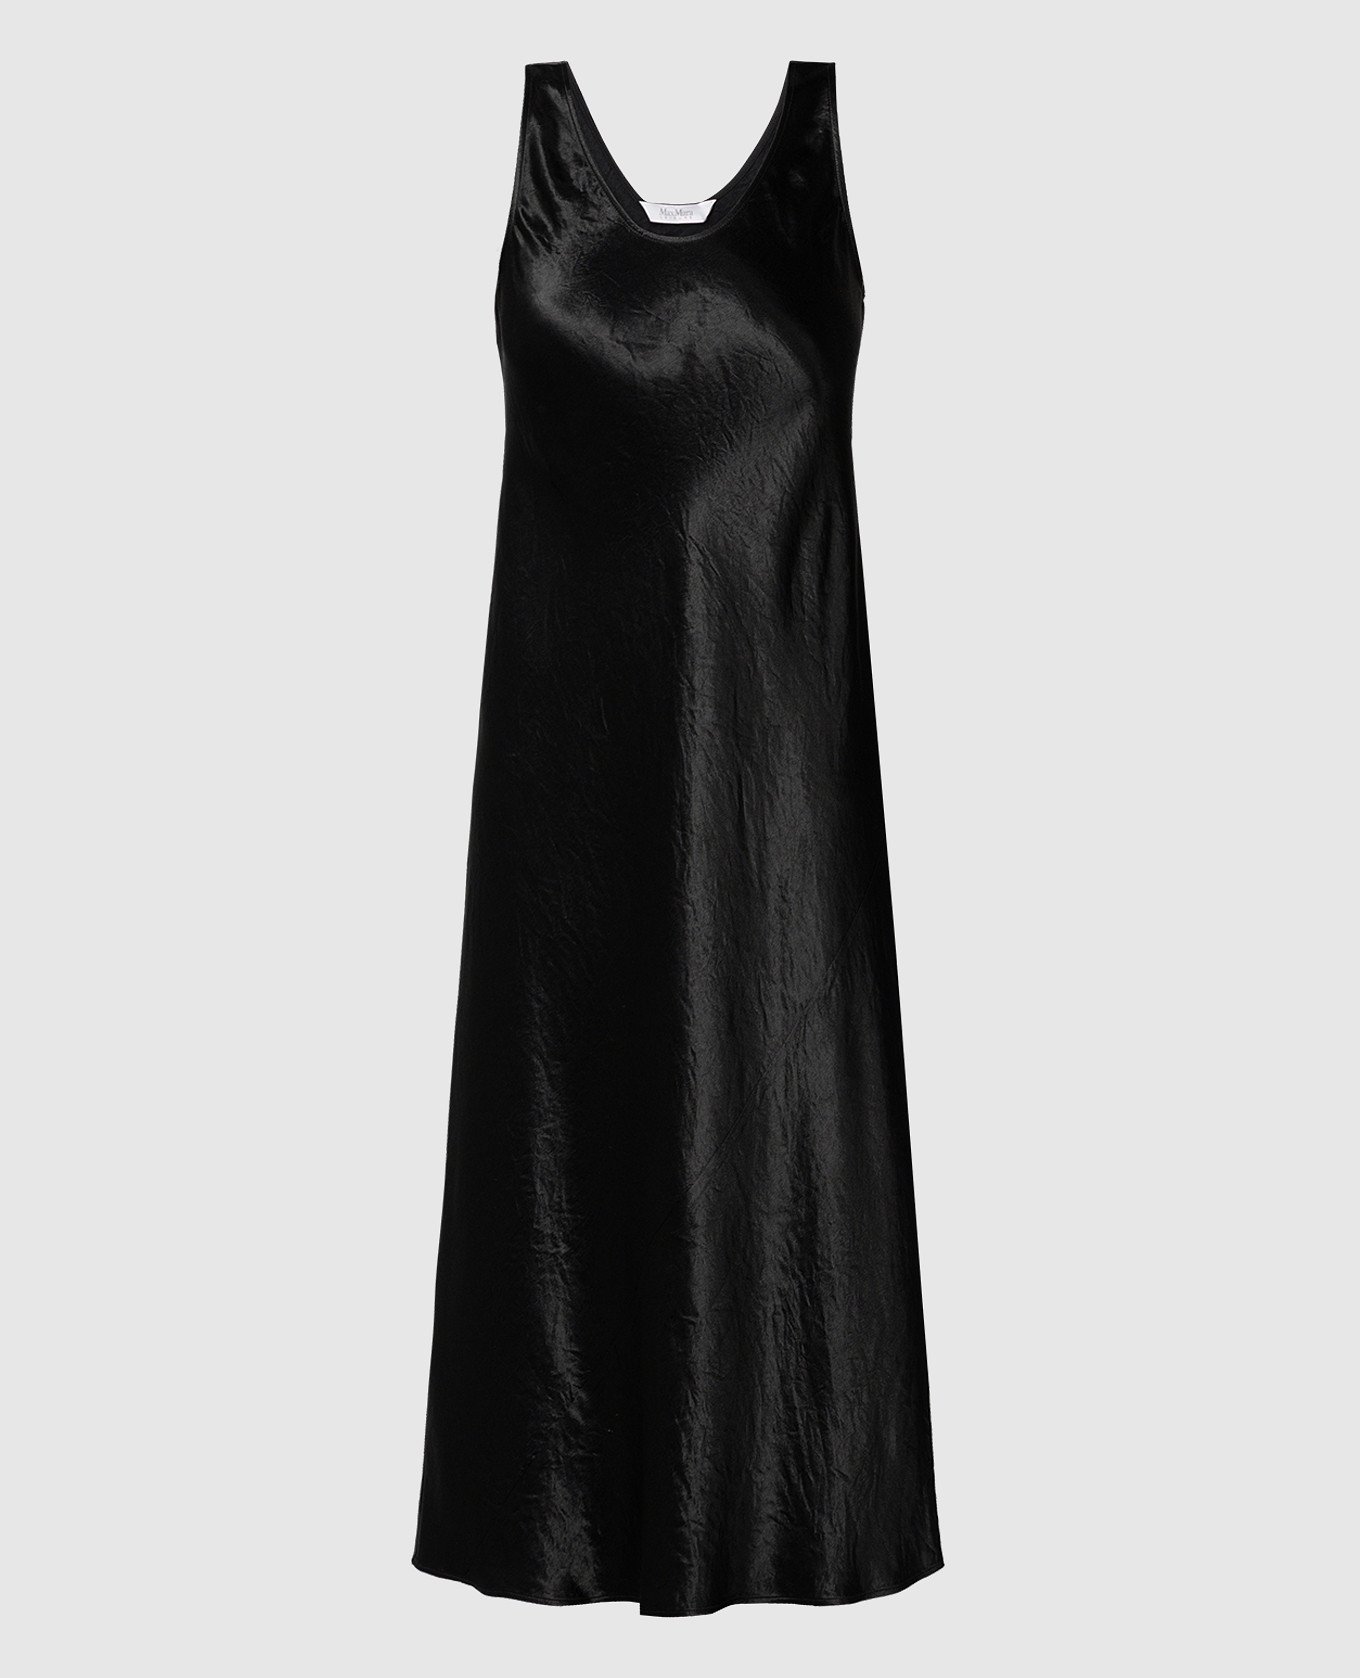 TALETE black dress